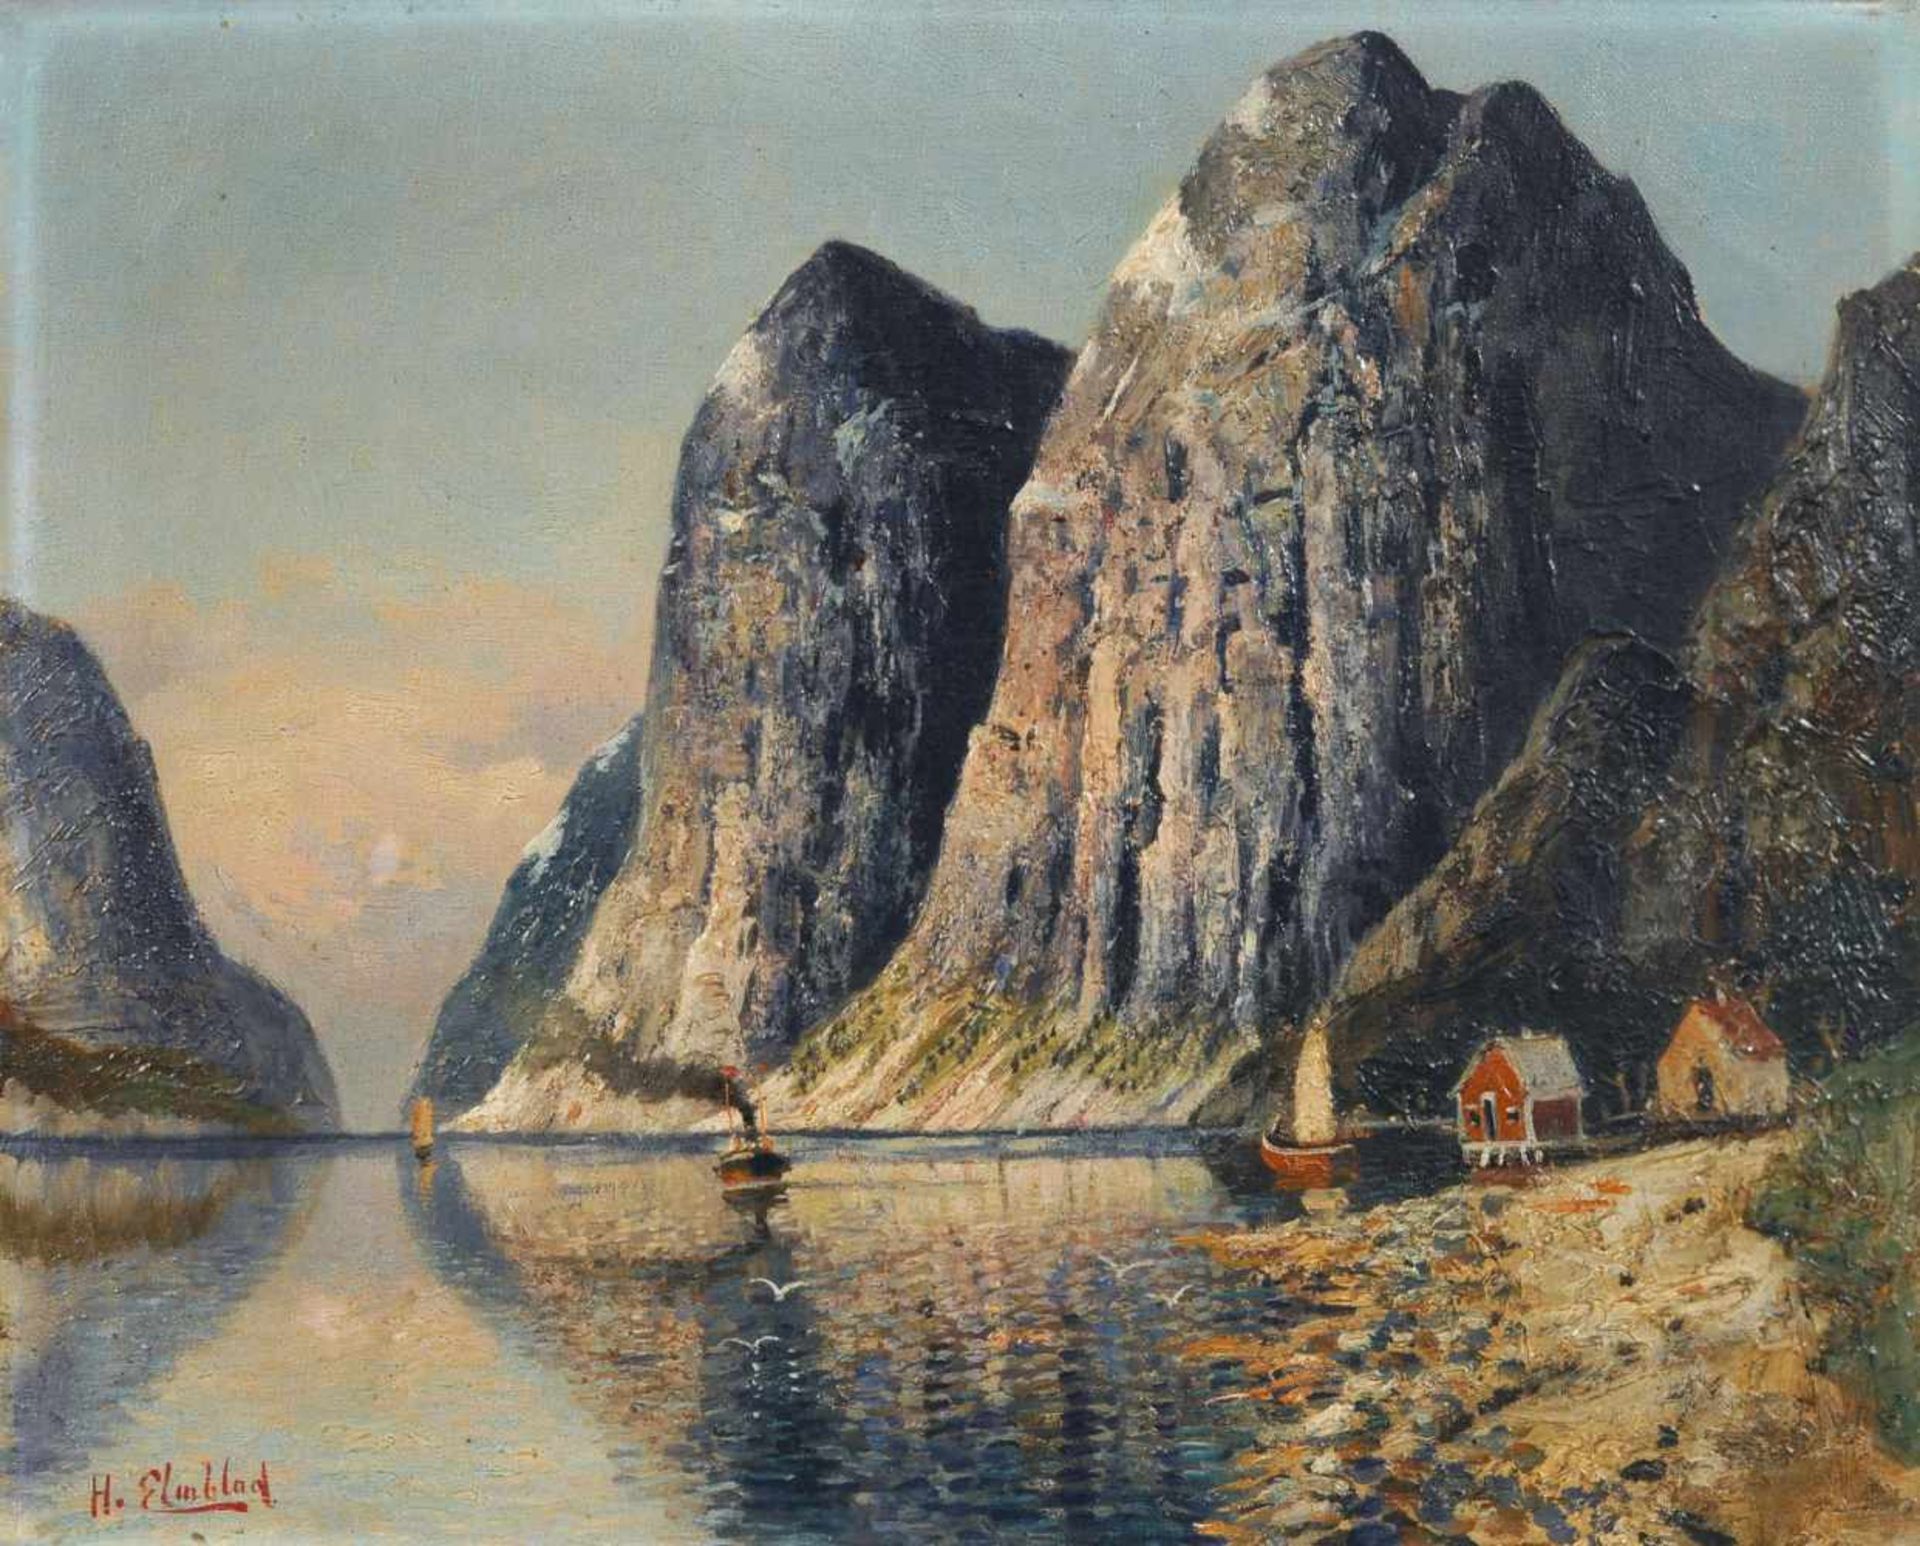 H. F. Elmblad "Hardanger Fjord". Wohl um 1900. H. F. Elmblad Erste Erw. 1881  letzte Erw. 1890Öl